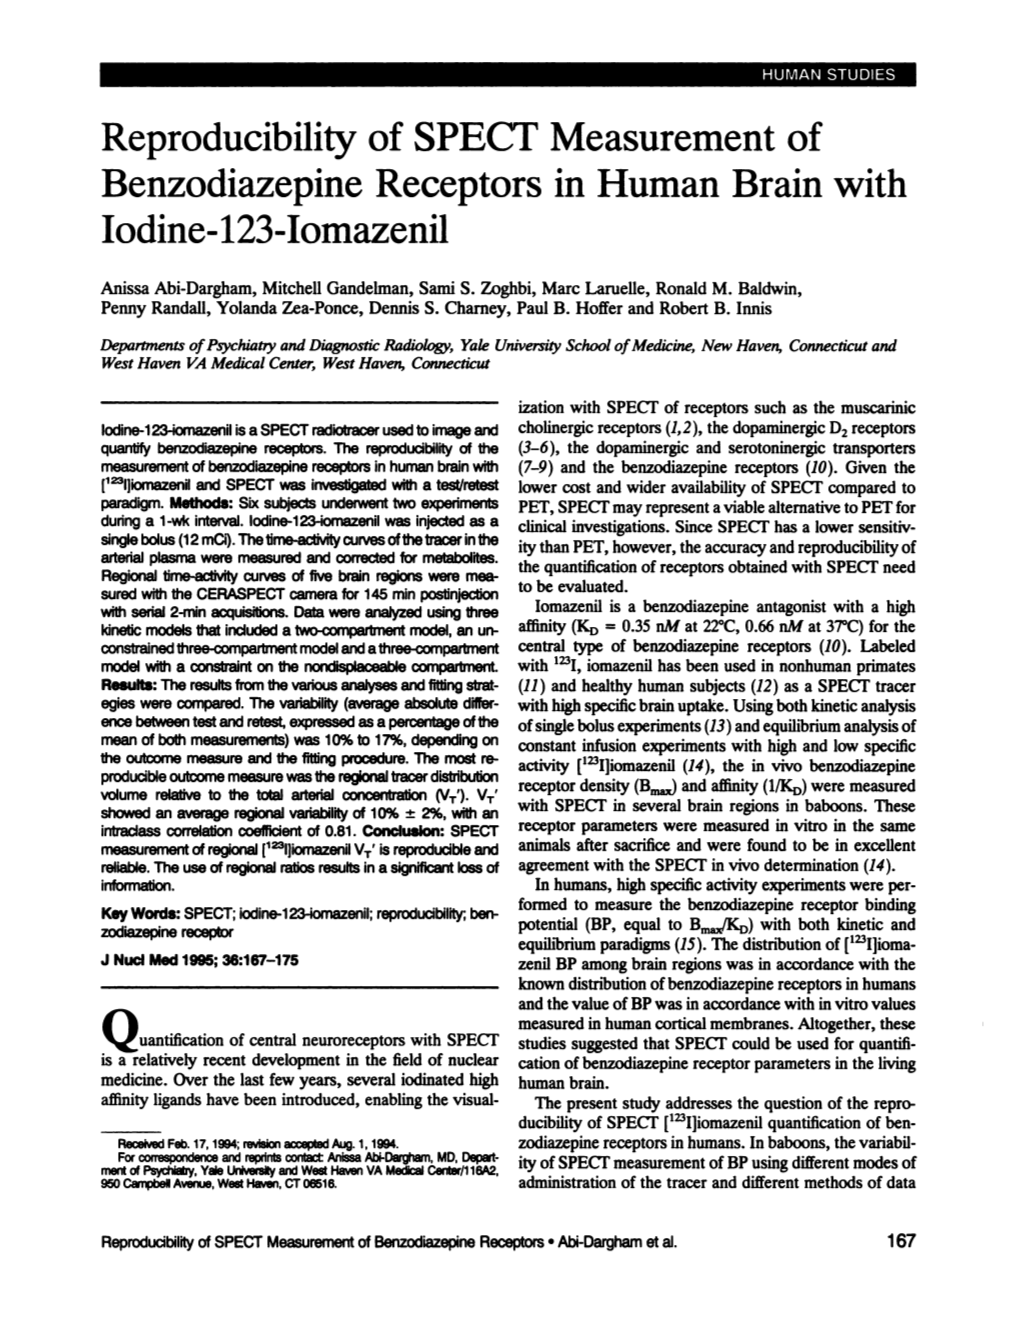 Reproducibility of SPECT Measurement of Benzodiazepine Receptors in Human Brain with Iodine-123-Iomazenil